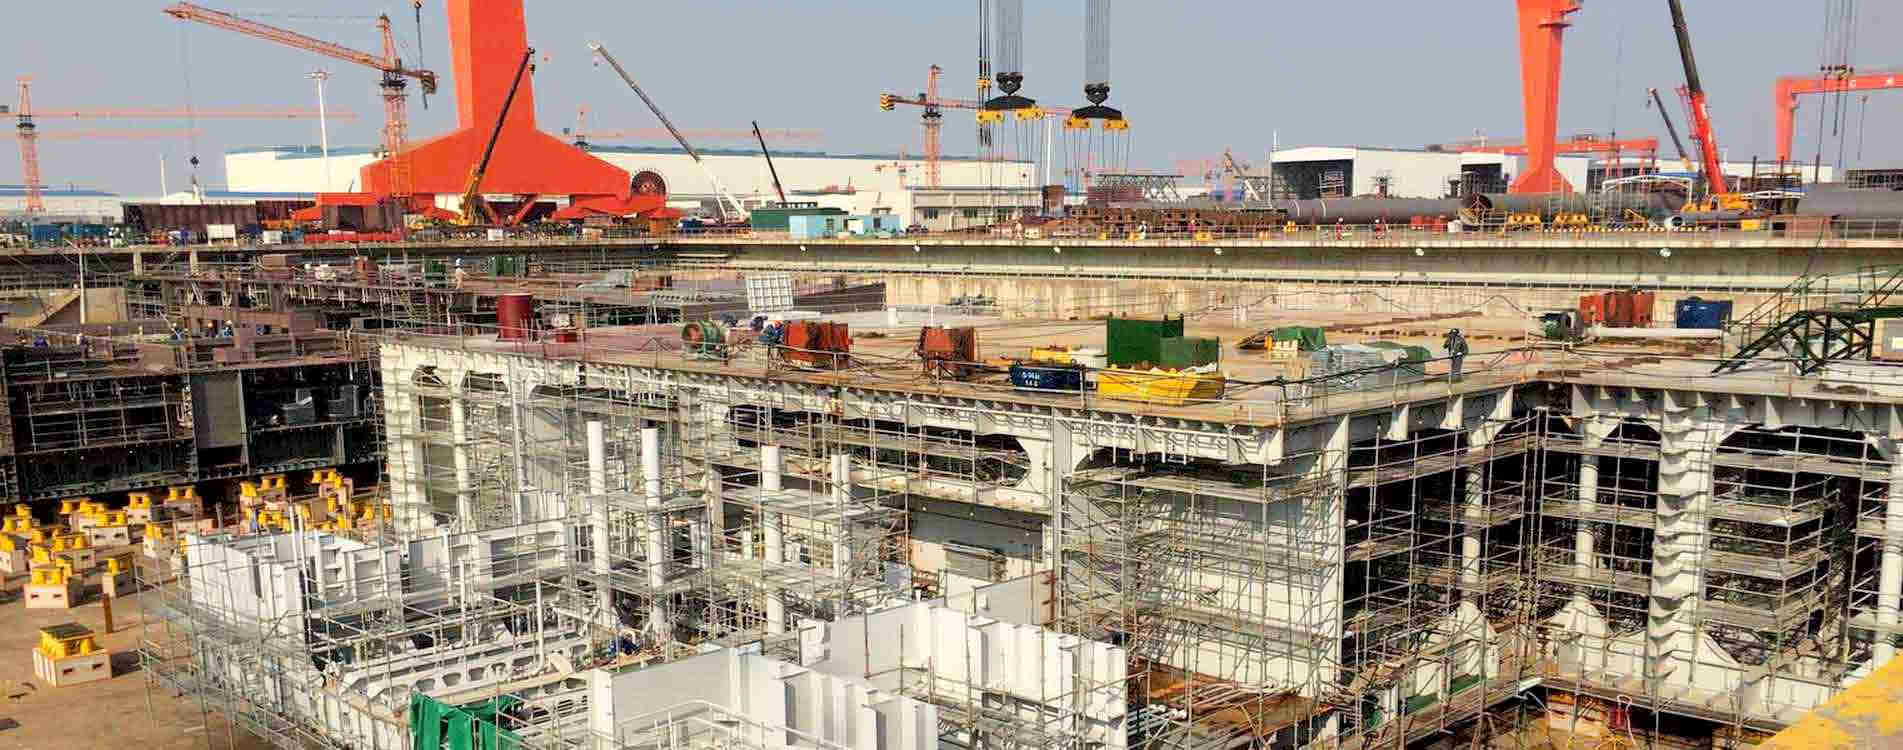 Shuangma Shipyard Scaffolding, Industrial Scaffolding